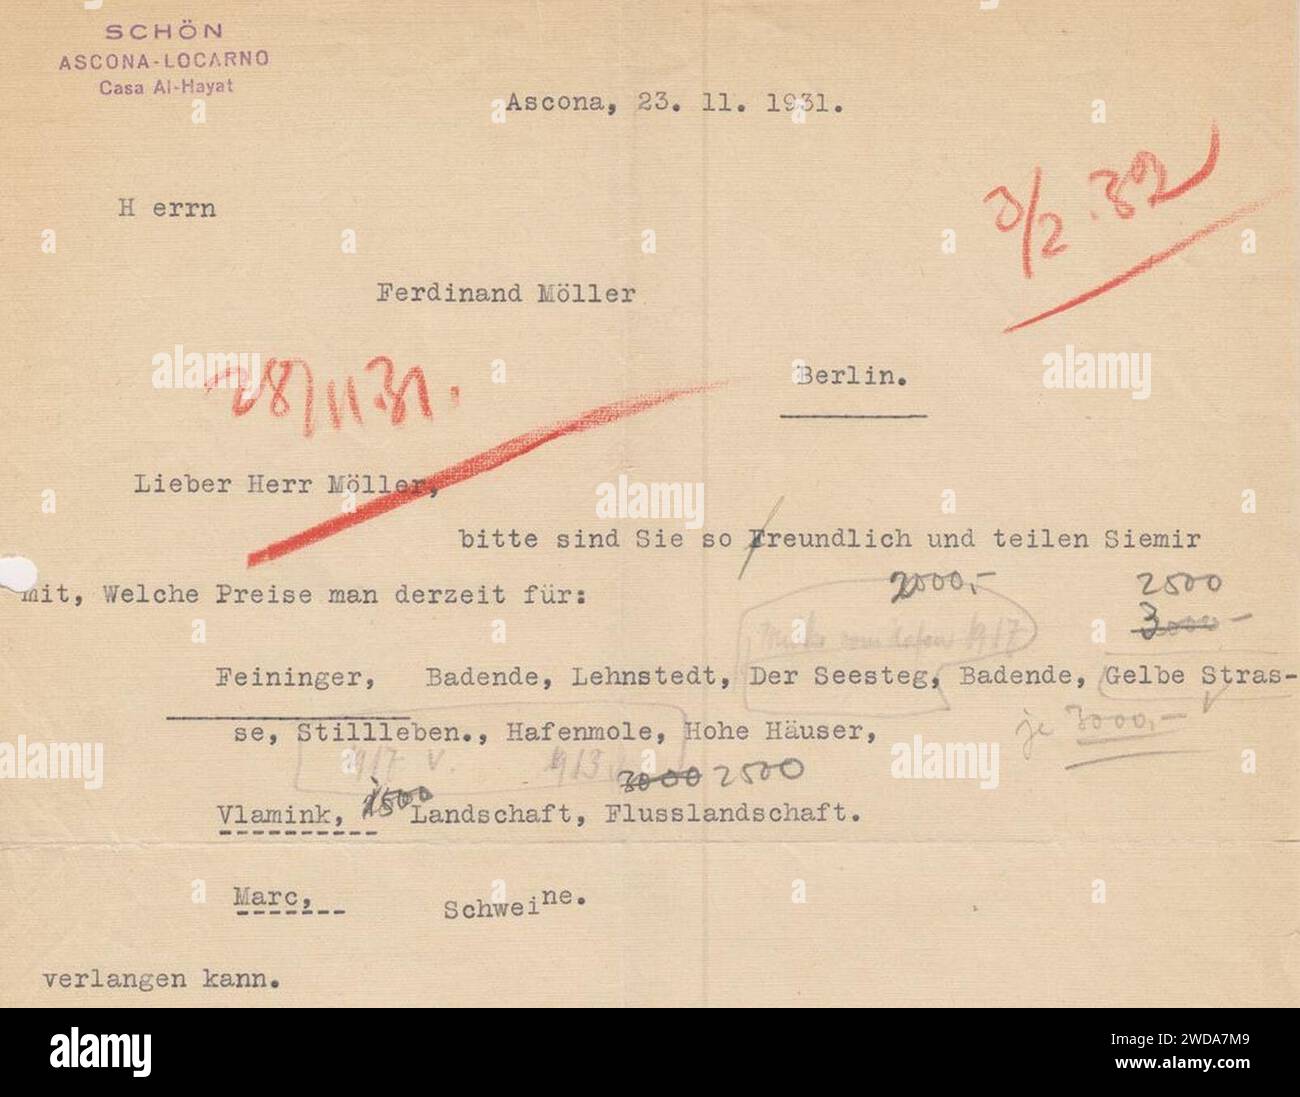 23. November 1931 Fritz schön Briefkopf von Ascona an Ferdinand-Möller in Berlin, Anfrage zum Preis für Gemälde von Lyonel Feininger, Maurice de Vlaminck und Franz Marc. Stockfoto